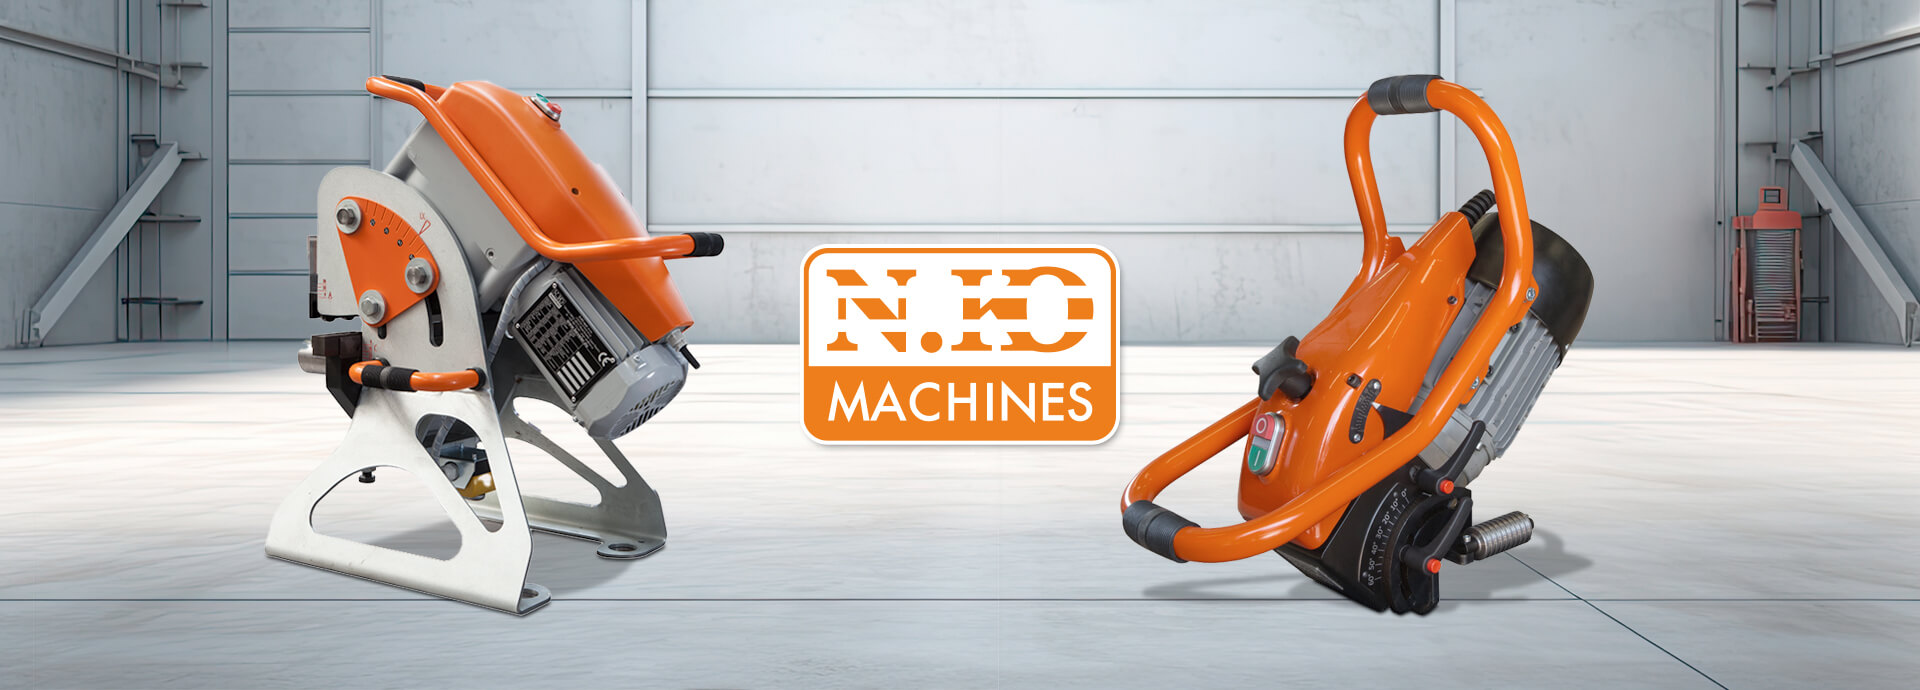 IPC-Metalmak | Maquinaria NKO Machines